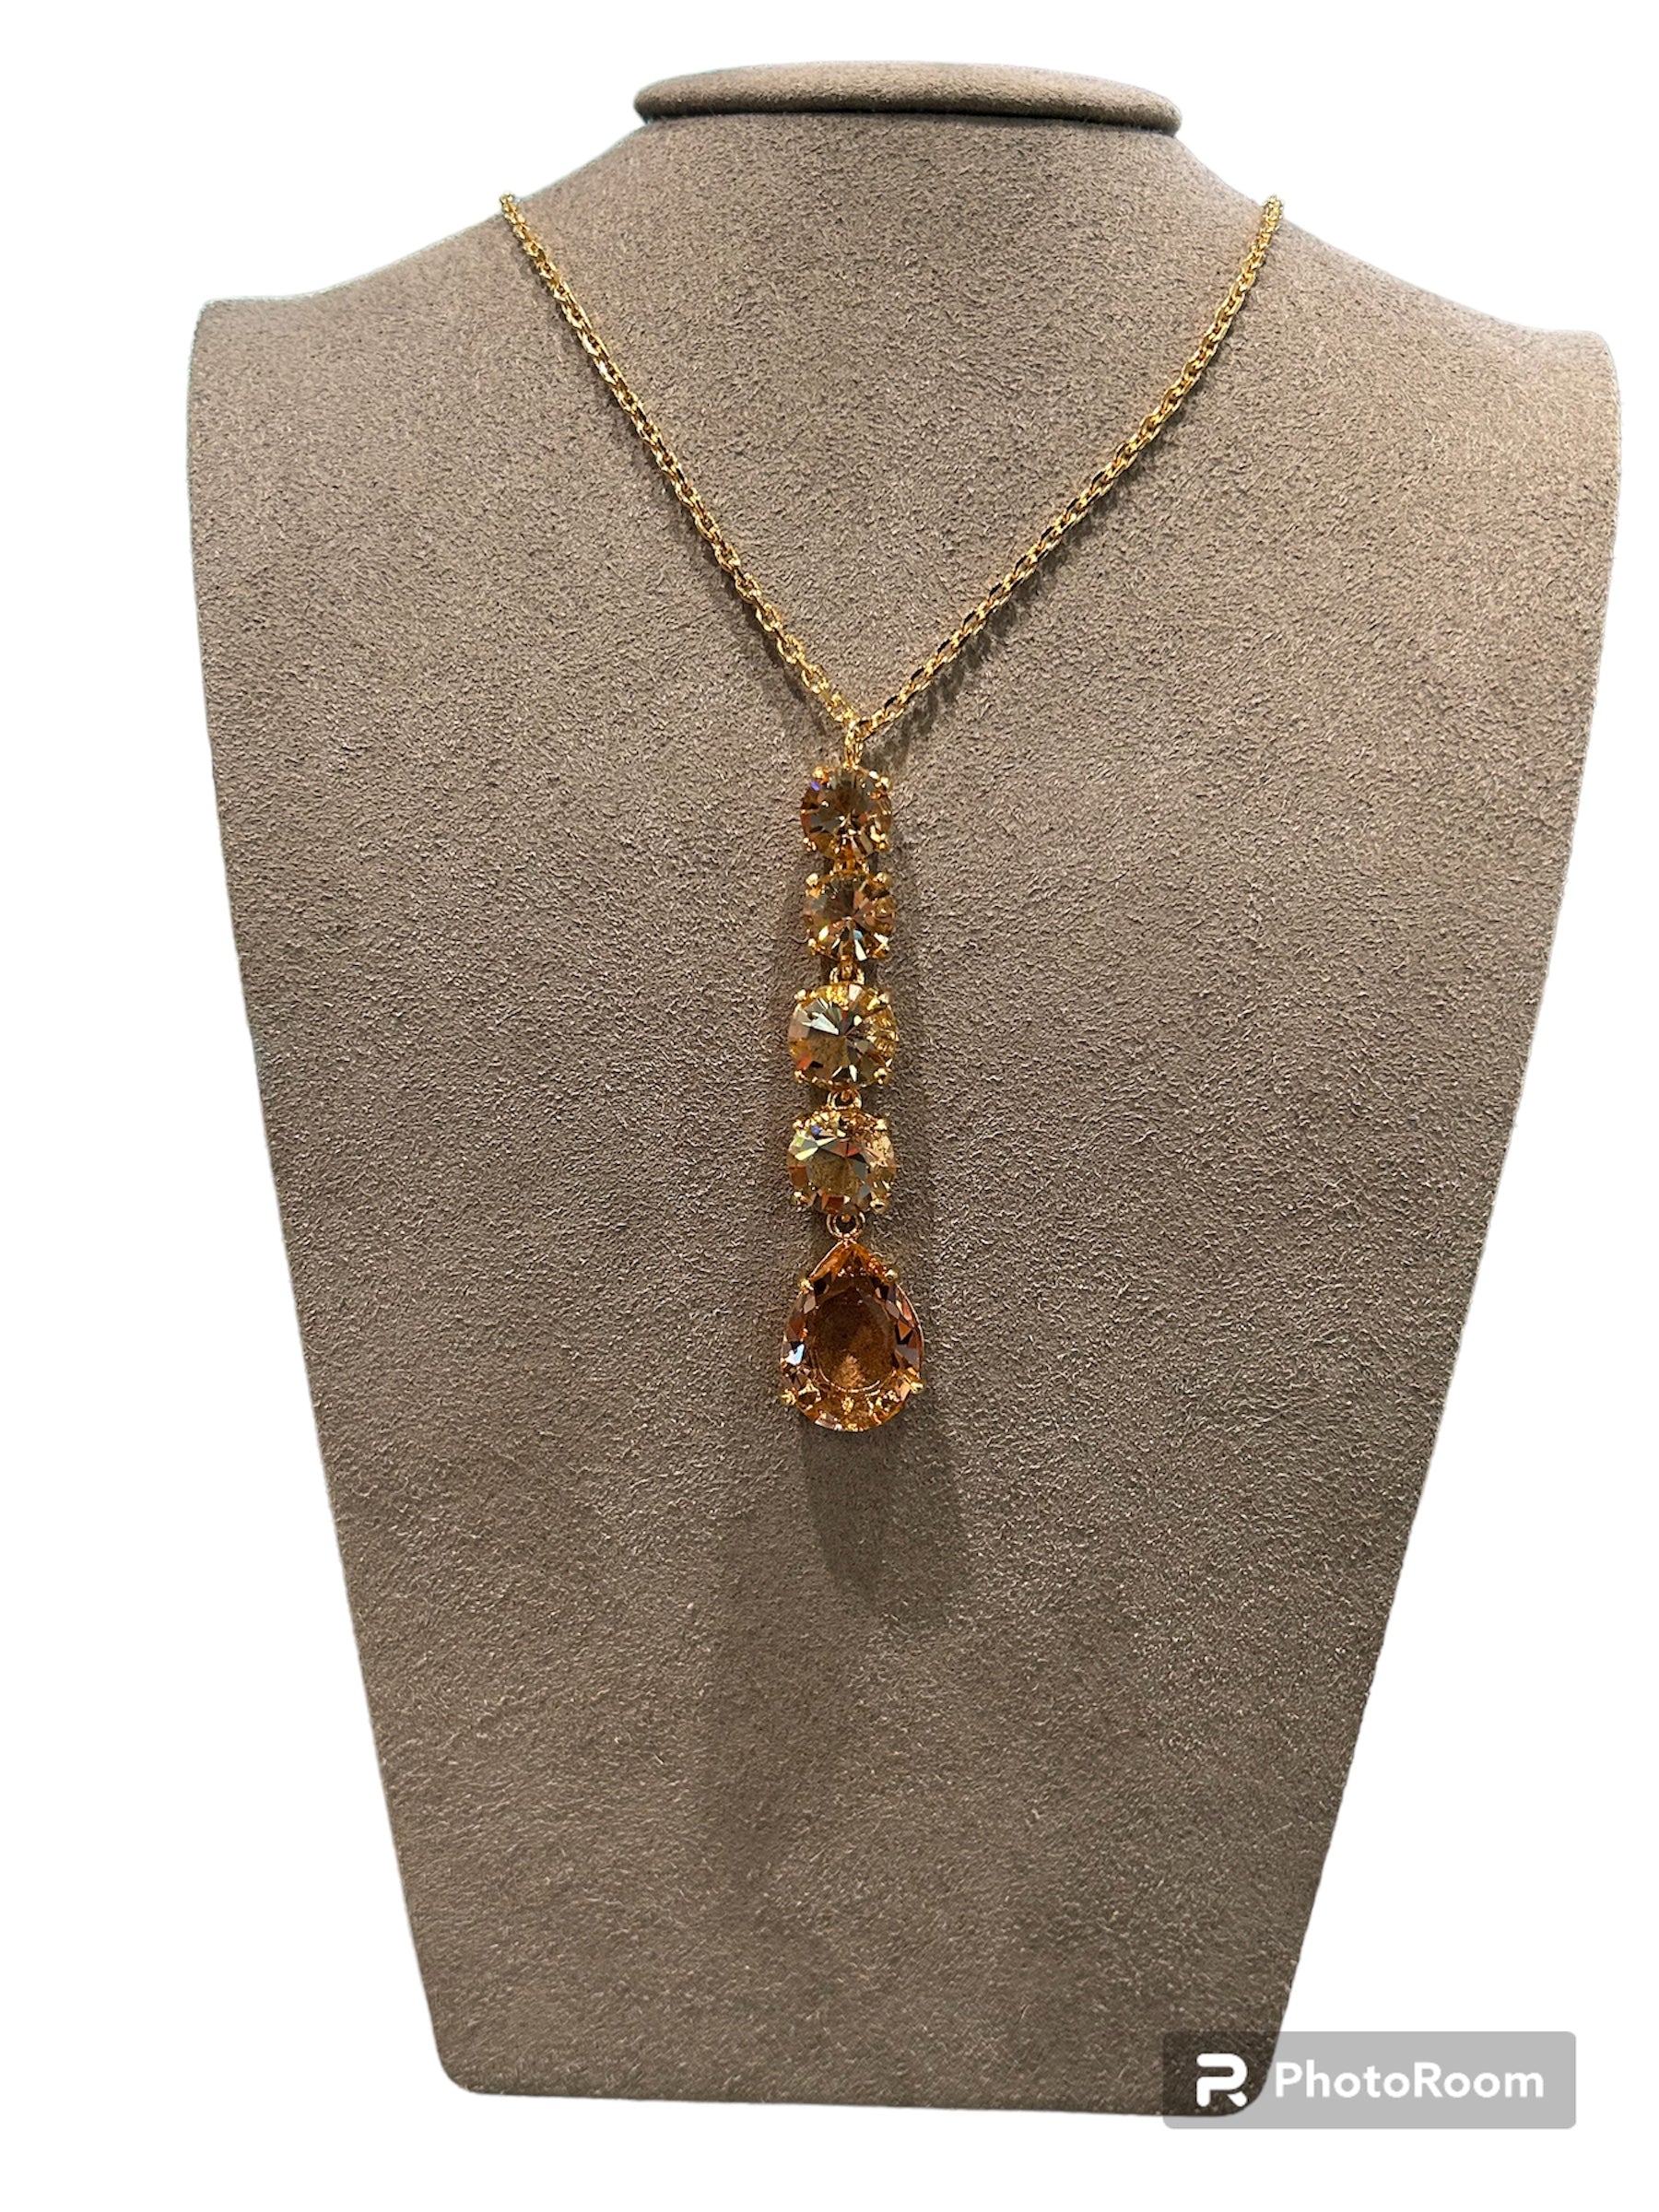 IL Mio Re - Gilded bronze necklace with pendant stones - ILMIORE CL 033